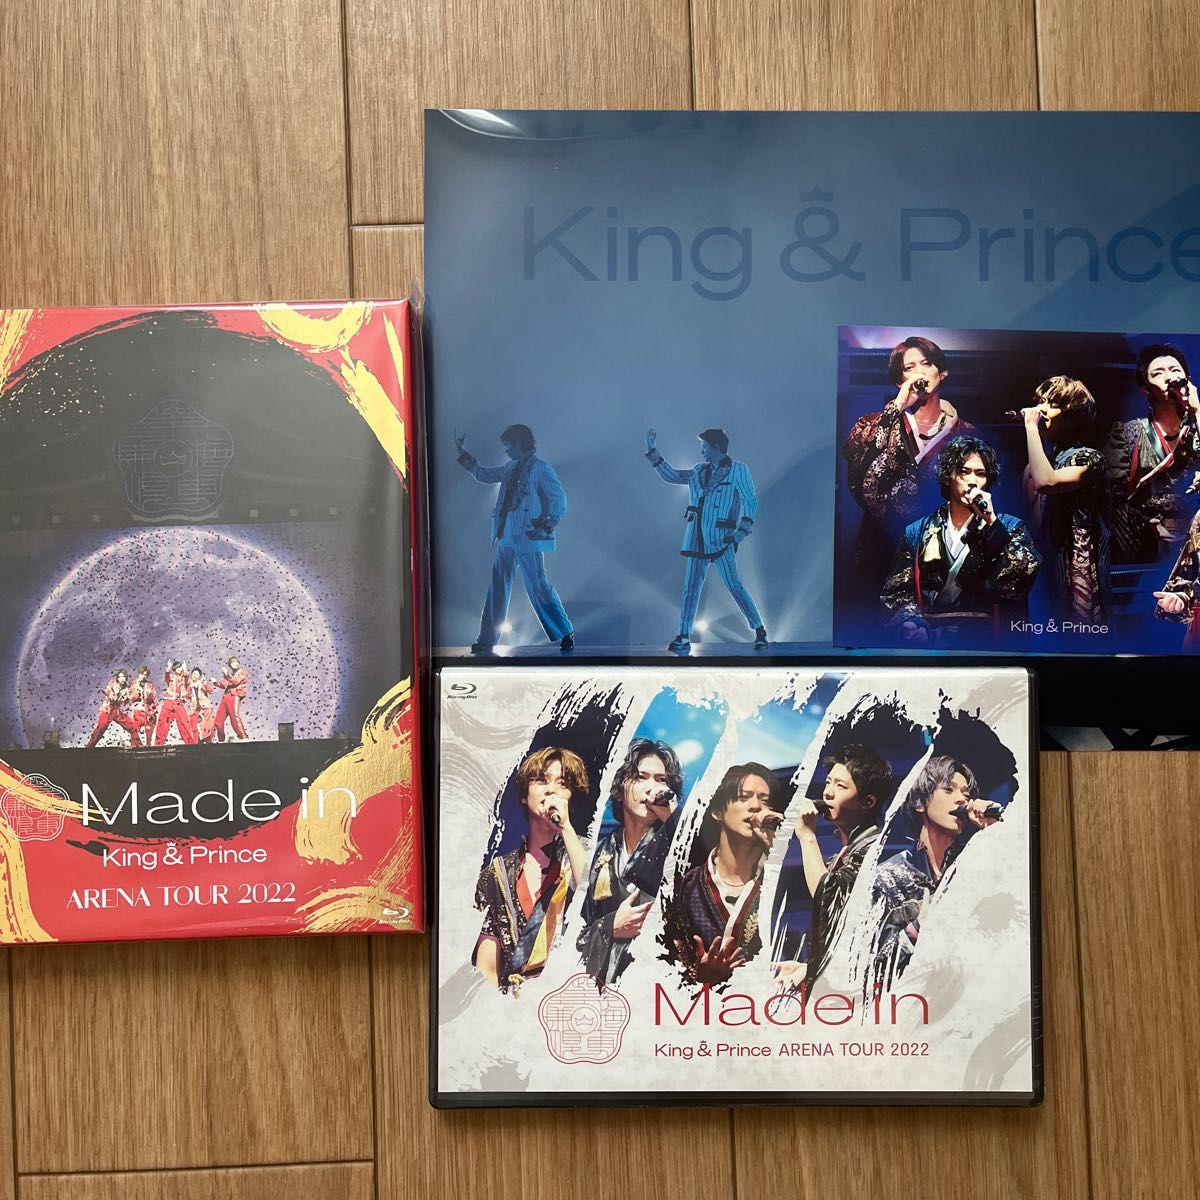 【新品未開封品】King&Prince アリーナーツアー Made in 初回盤 通常盤 BluRay